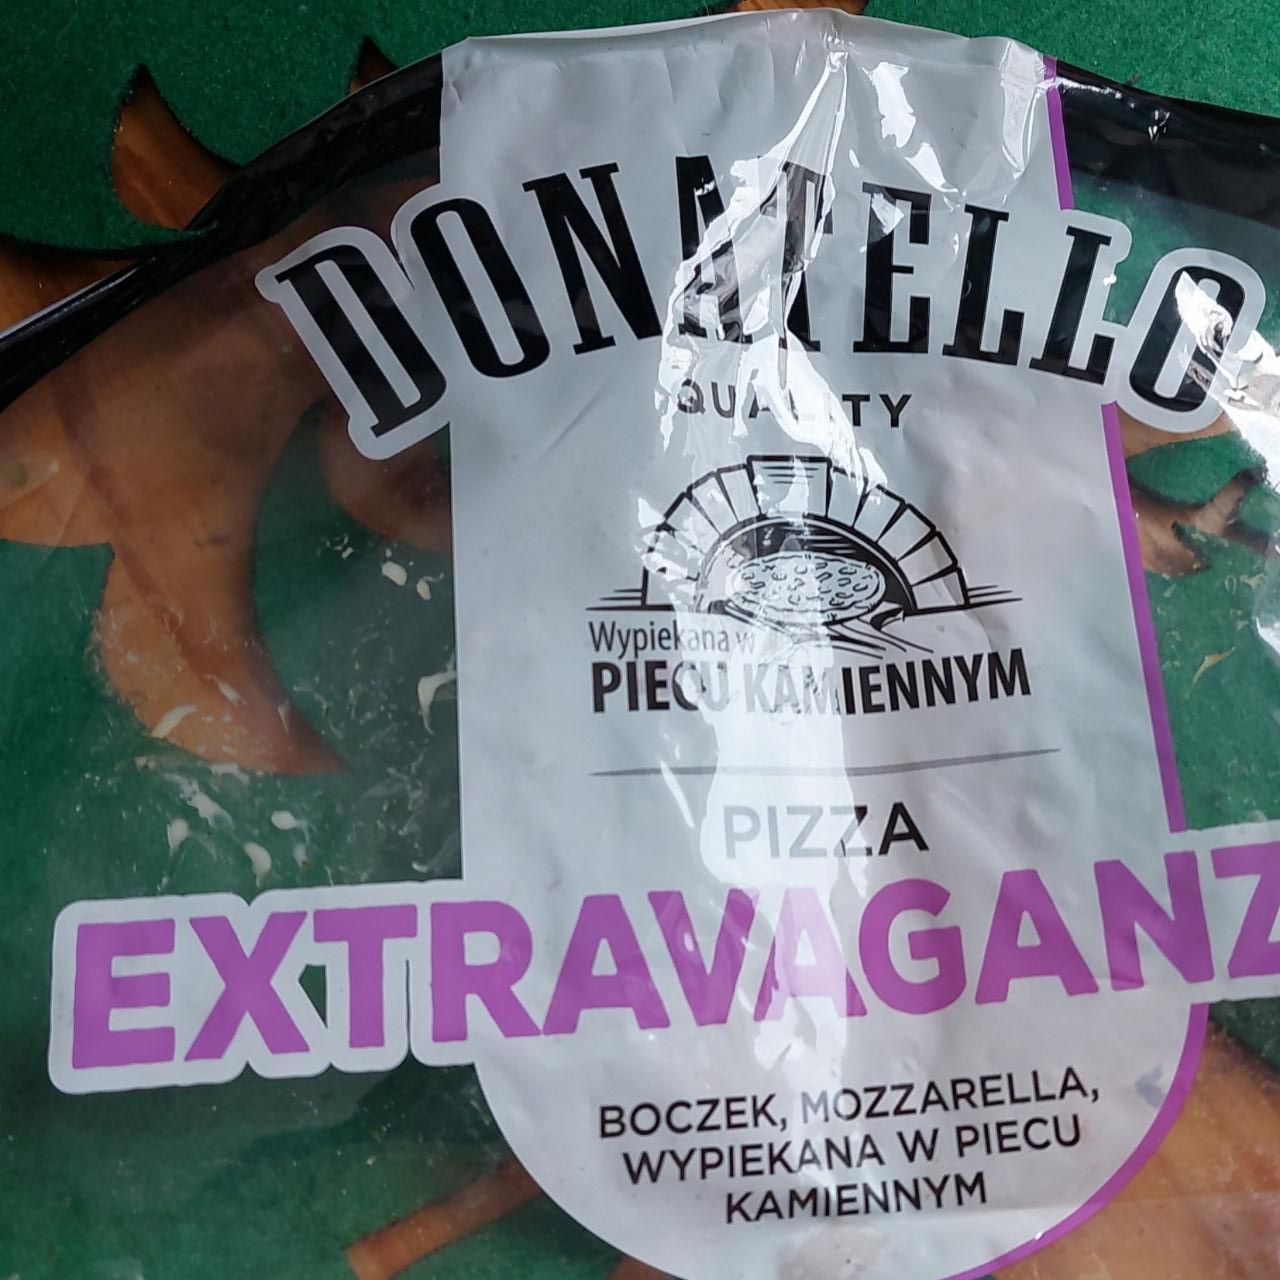 Zdjęcia - pizza extravaganzza donatello